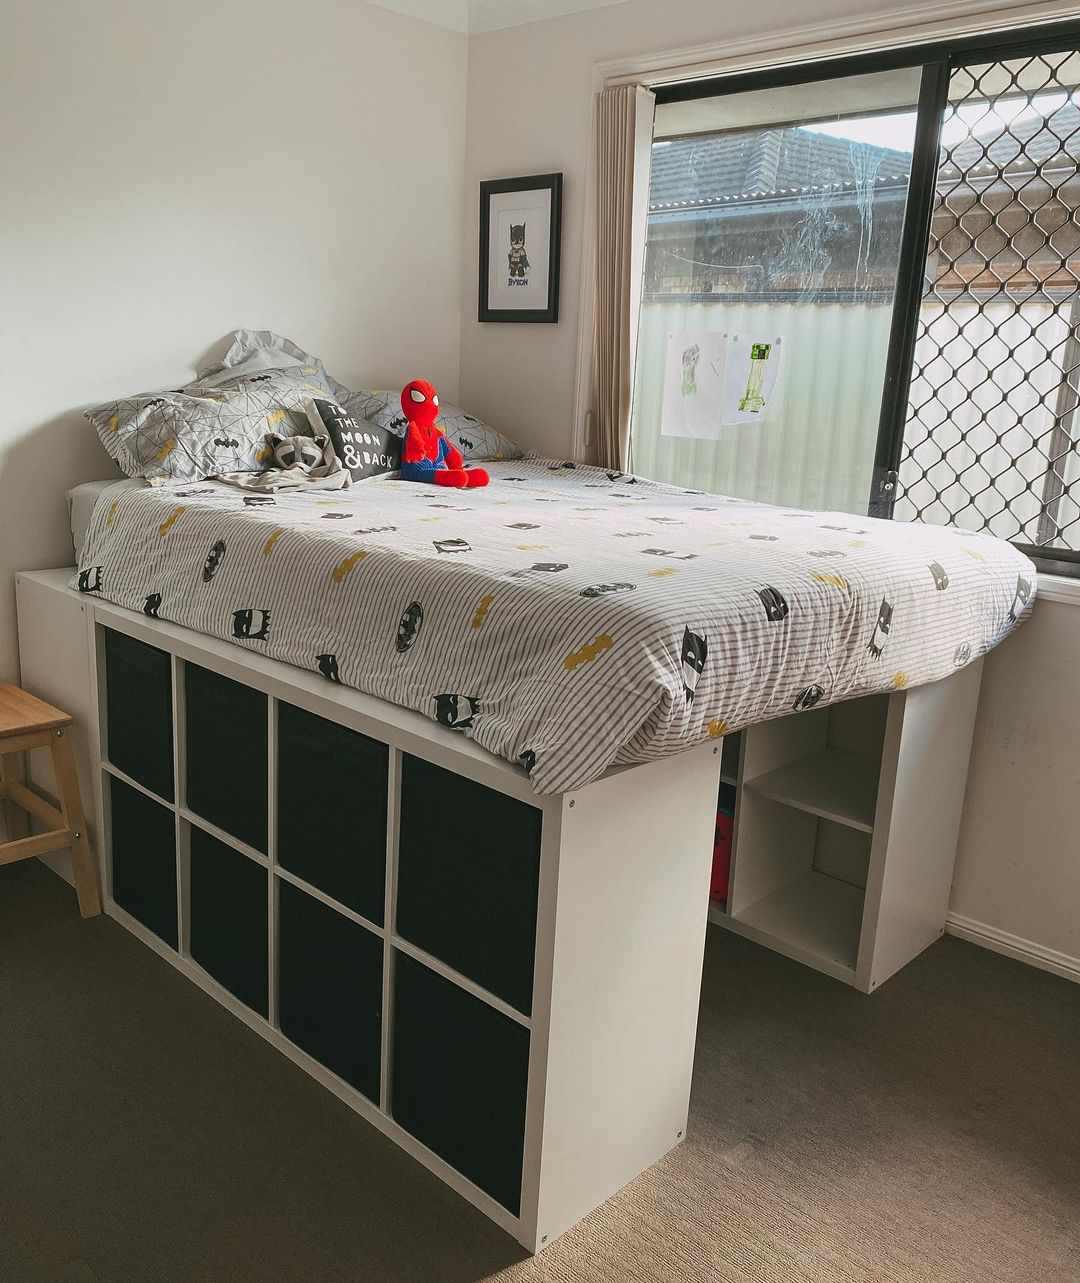 La cama de un niño convertida en altillo mediante cubos de almacenaje.